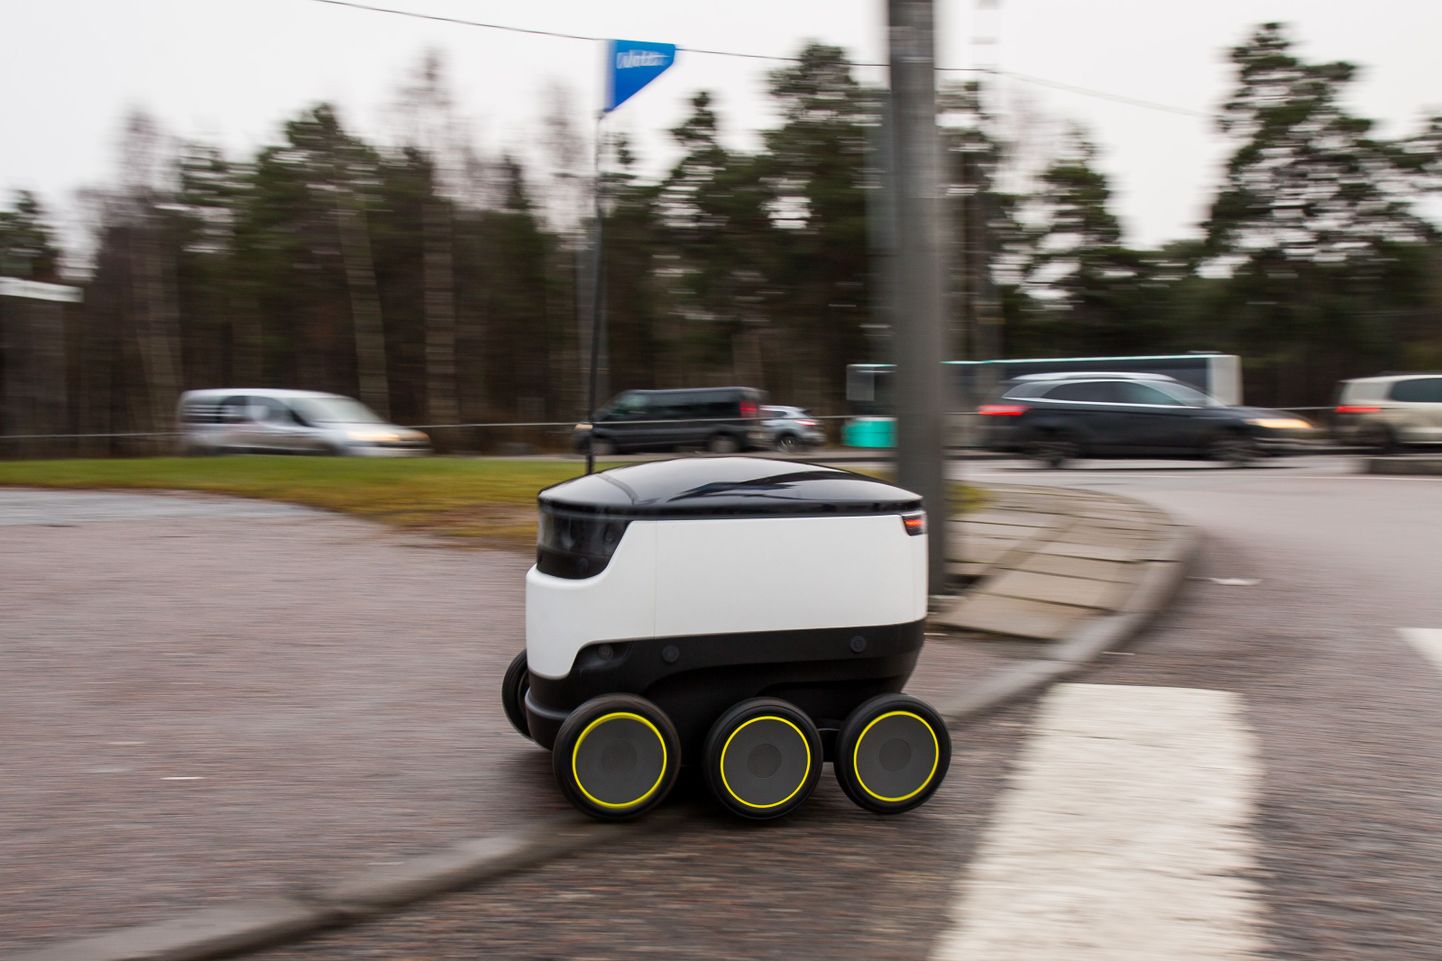 Starshipi pakiveorobot toimetas Tallinnas toidu restoranist kliendi koju